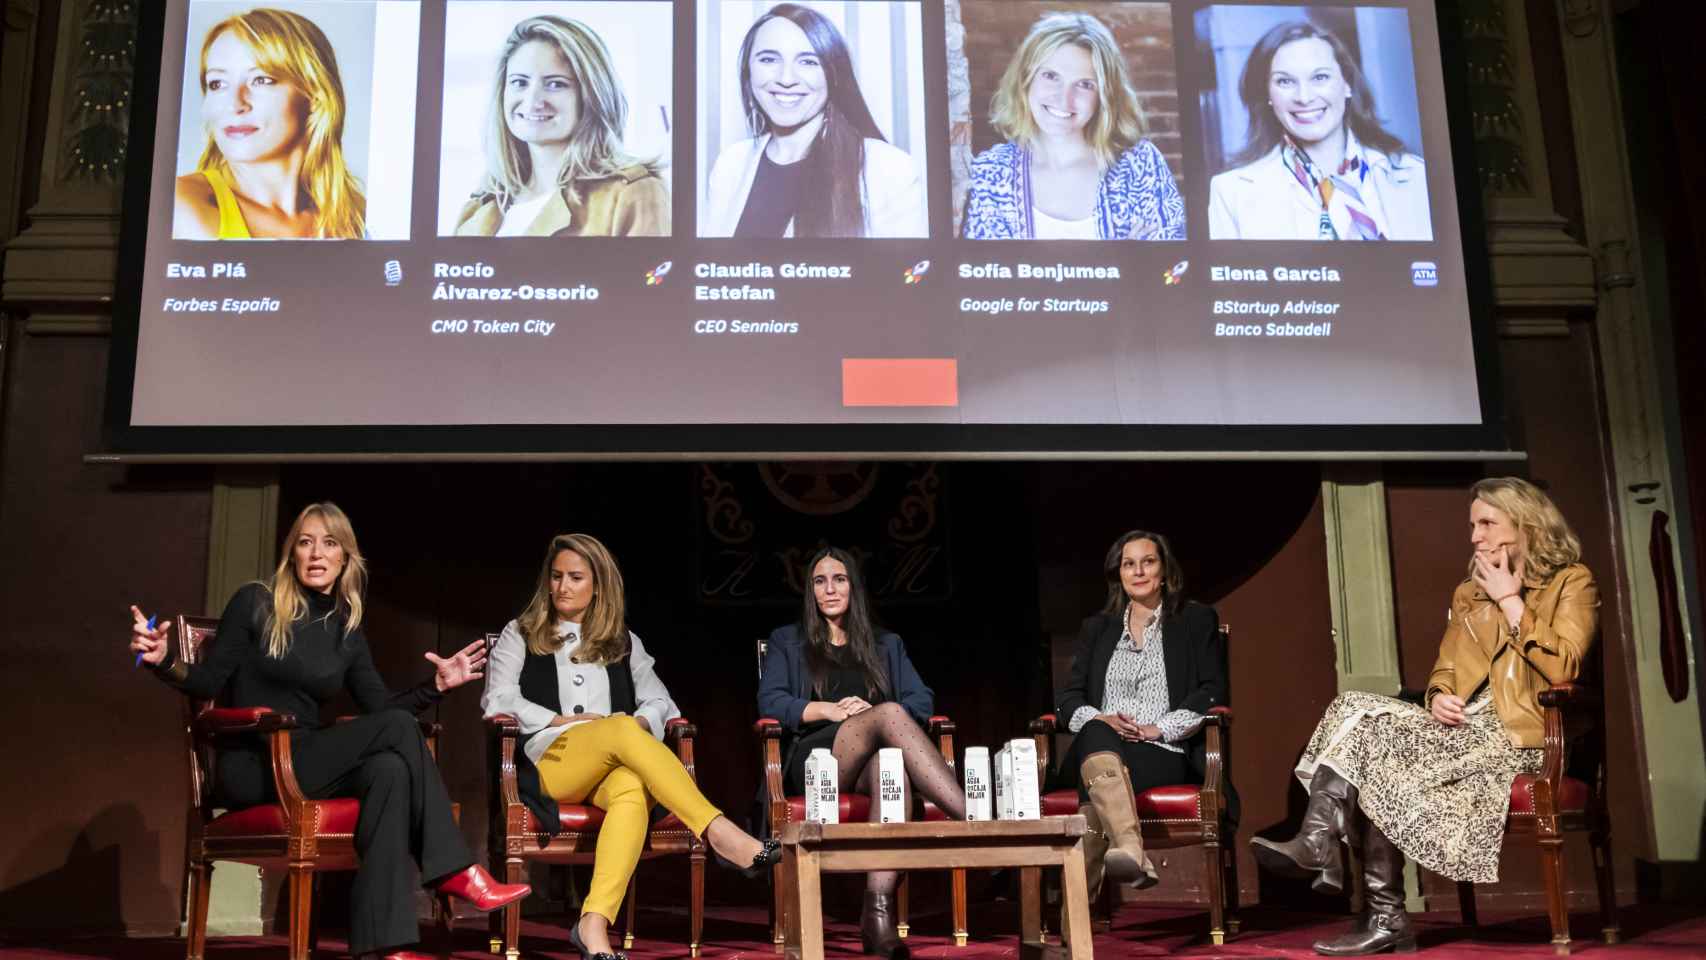 Mesa redonda sobre ‘Mujeres Inversoras’, moderado por Eva Plá (Forbes España).